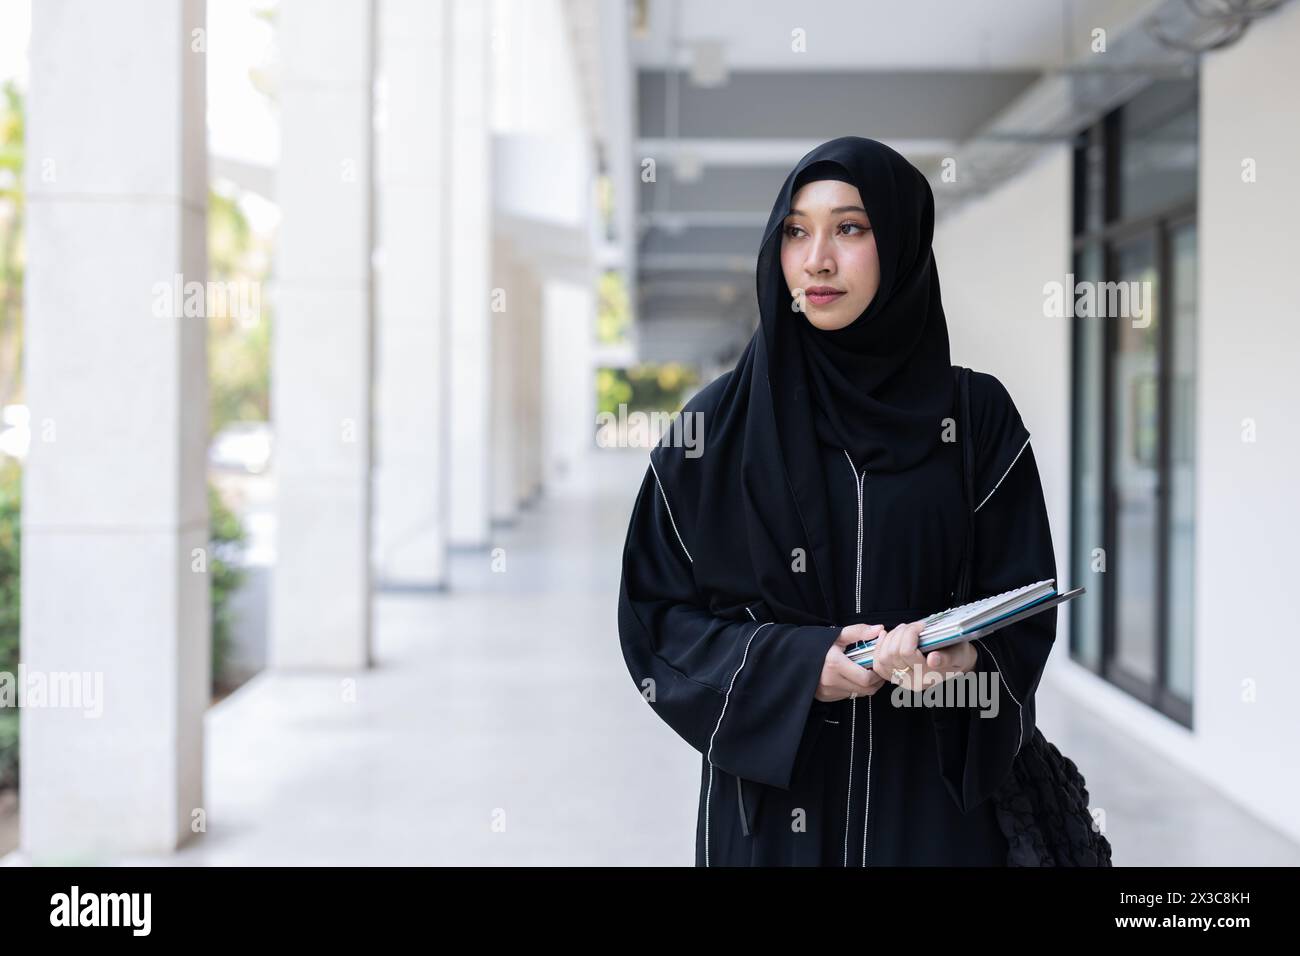 Universität saudi-arabische Niqab-Frau High Education im Universitätscampusgebäude mit modernen Wissensbüchern. Arabisch-saudische schwarze Chador-Teenager-Dame. Stockfoto